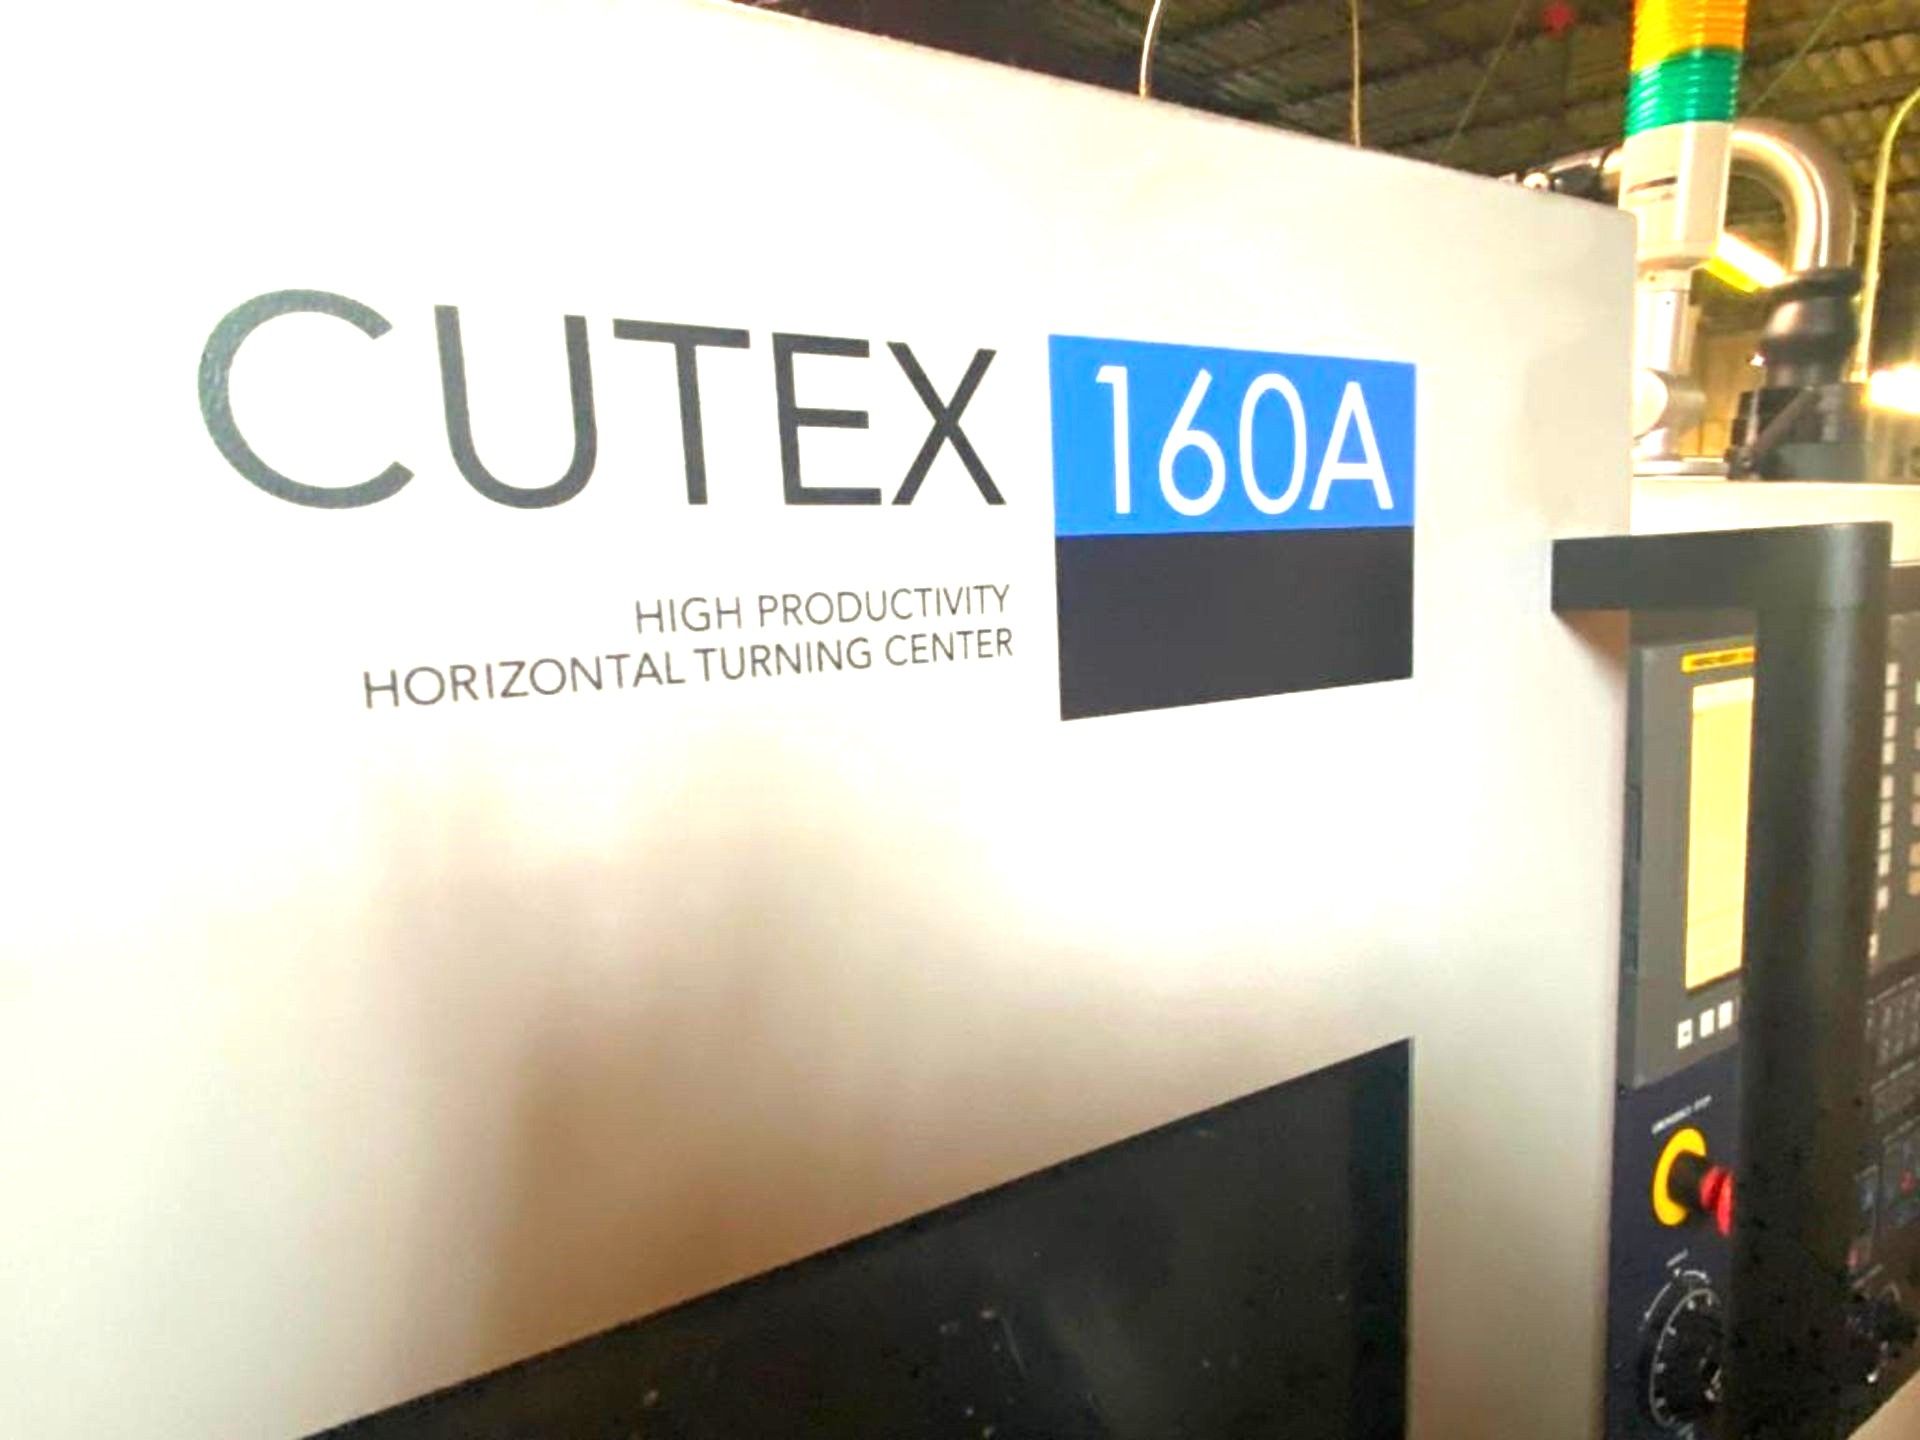 2015 HWACHEON CUTEX-160A CNC TURNING CENTER LATHE W/BAR FEEDER, S/N M024362L4F E - Image 10 of 11